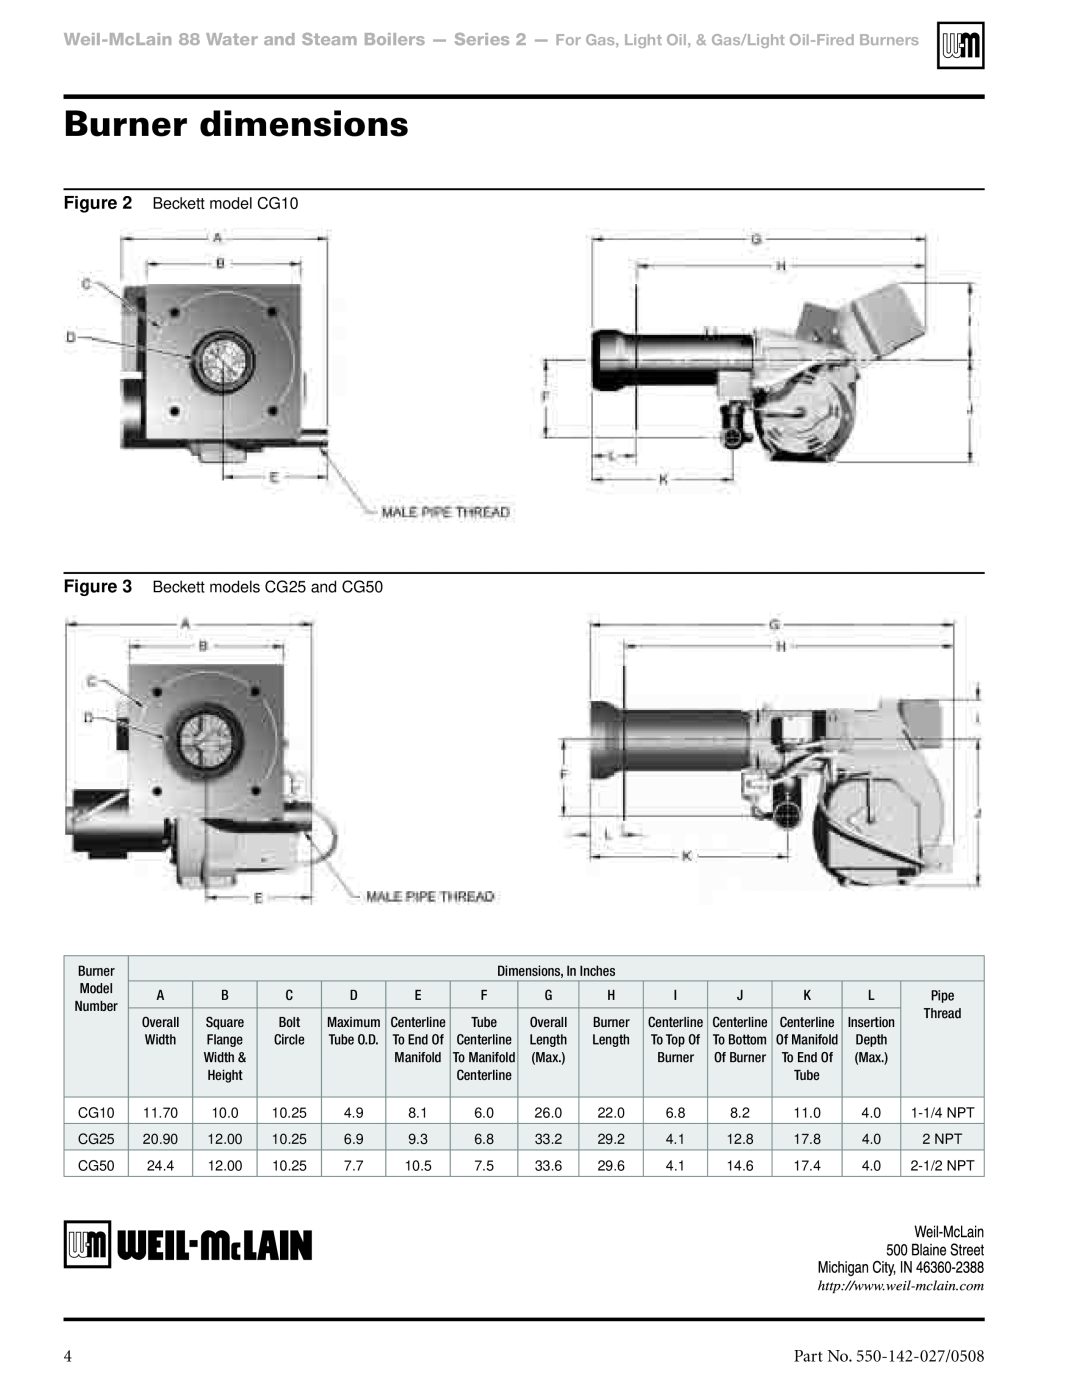 Weil-McLain manual Burner dimensions, Part No. 550-142-027/0508, Beckett model CG10, Beckett models CG25 and CG50 